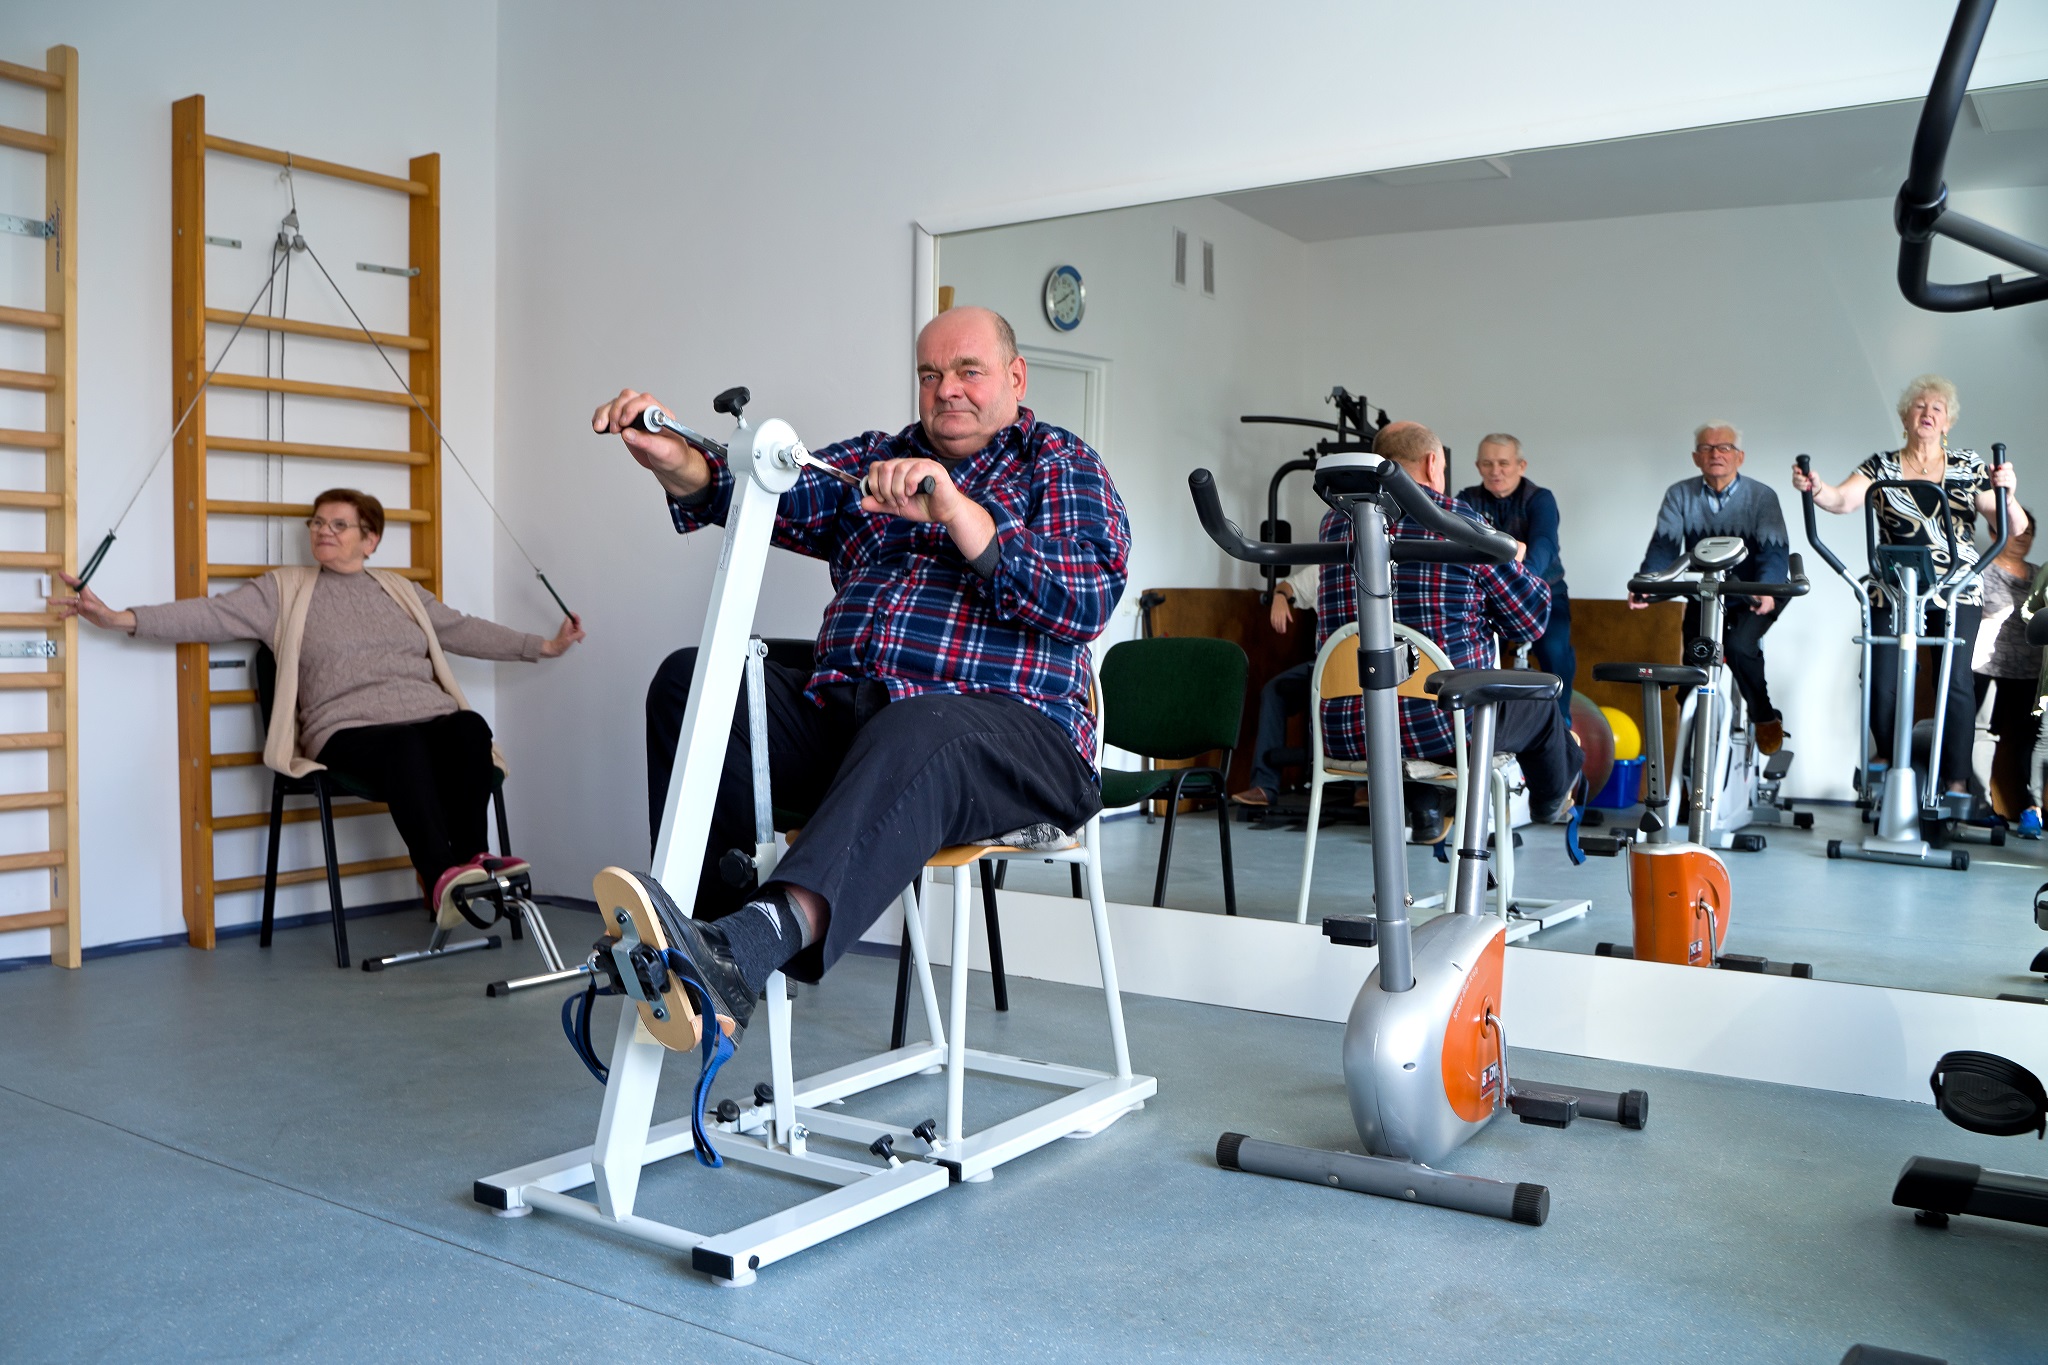 Sala zajęć ruchowych, na pierwszym planie mężczyzna ćwiczący na rowerze rehabilitacyjnym, w tle kobieta siedząca przy drabinkach w trakcie ćwiczeń rehabilitacyjnych, w lustrze na ścianie widać inne osoby ćwiczące na rowerach rehabilitacyjnych